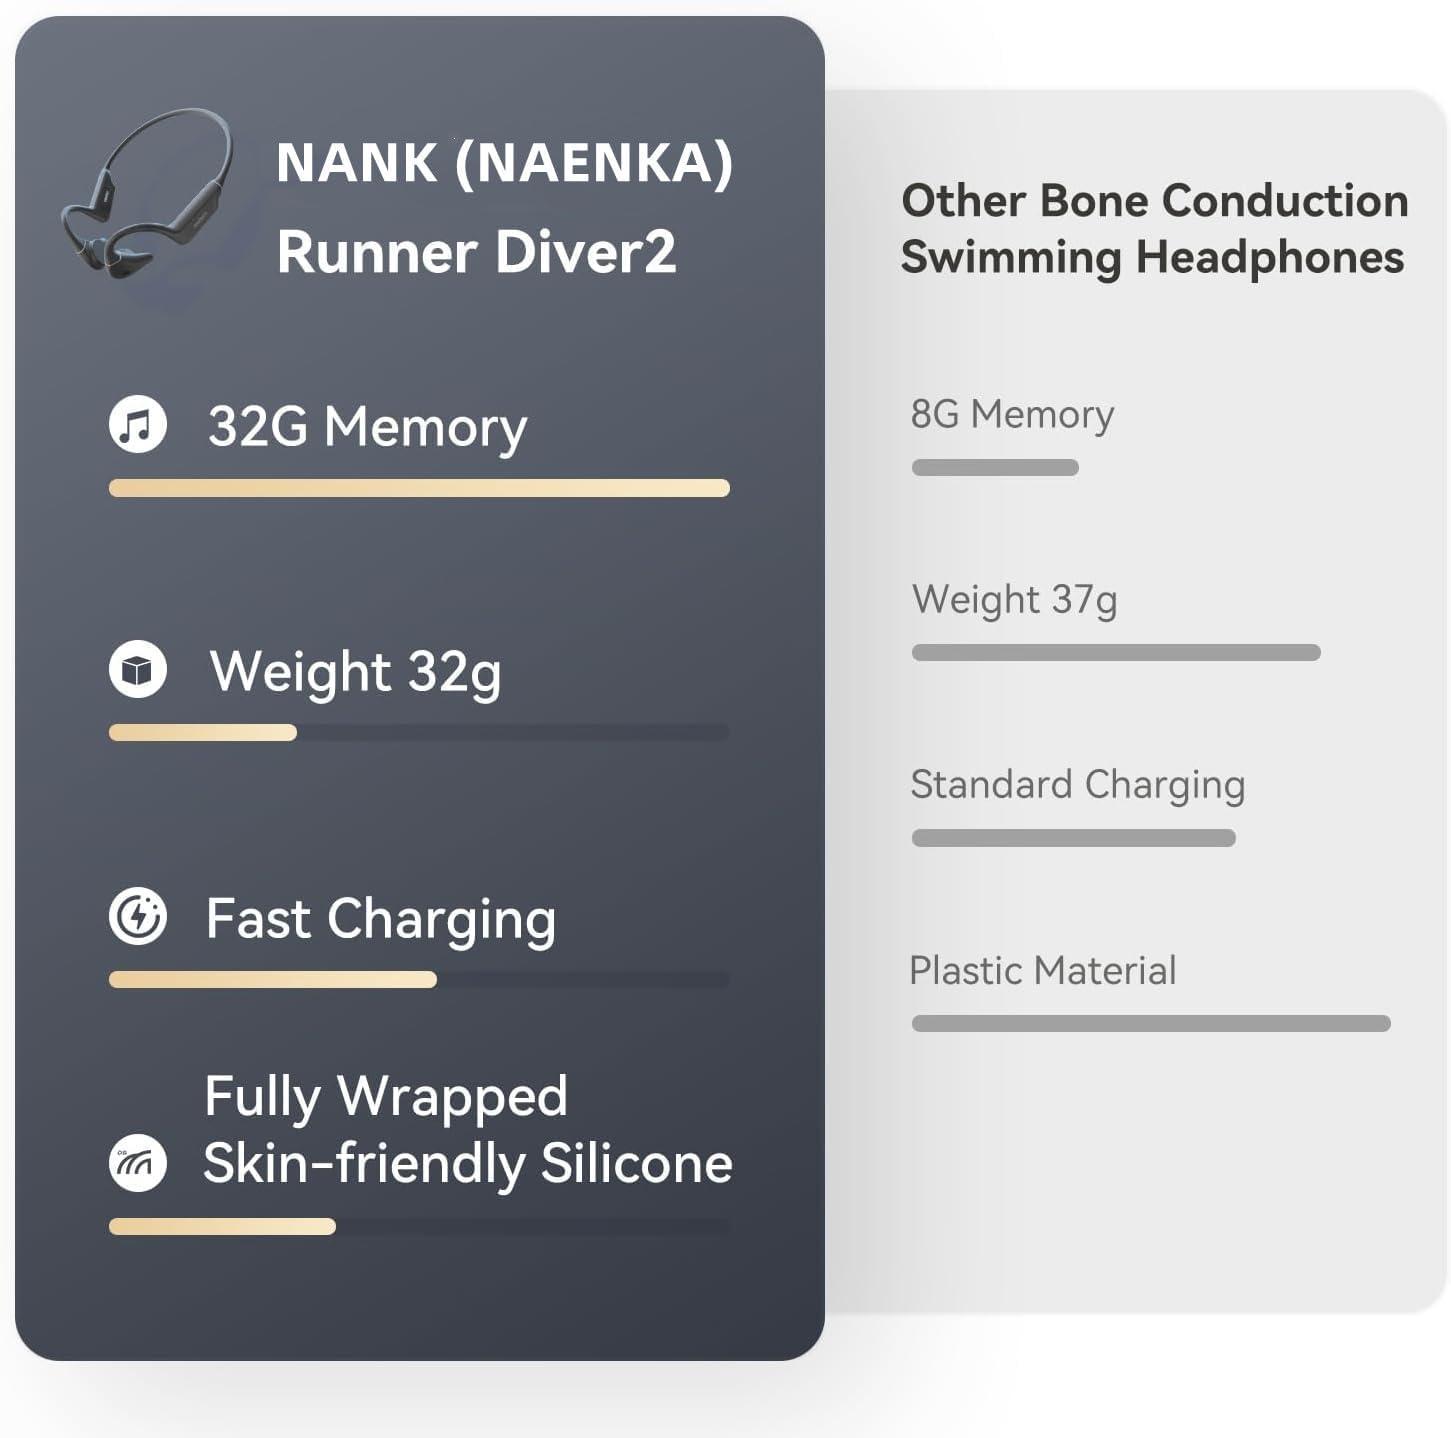 NANK Runner Diver2 Bone Conduction Headphones IP68 Swimming